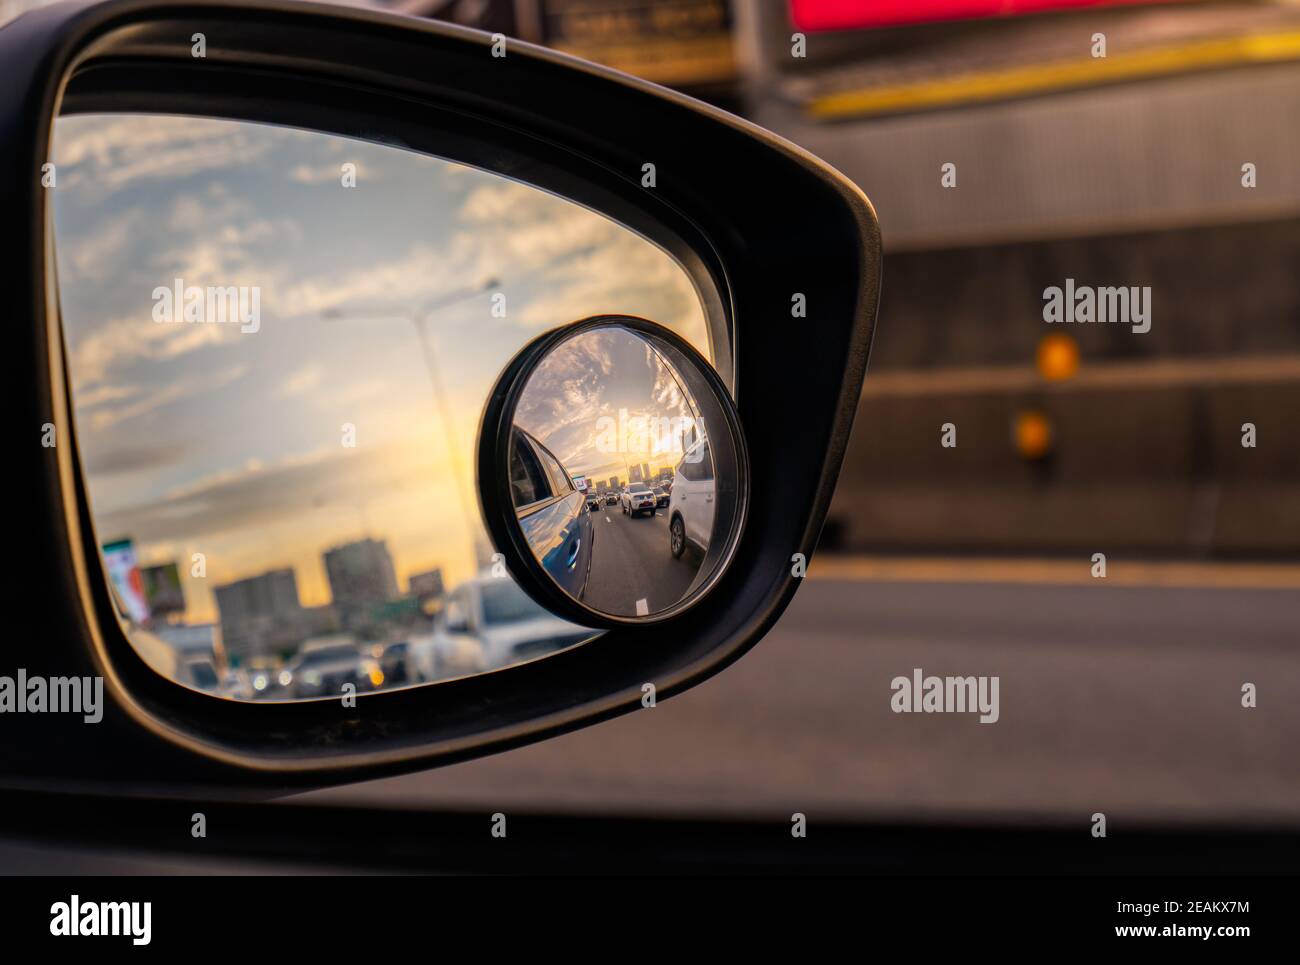 Stau auto rückspiegel -Fotos und -Bildmaterial in hoher Auflösung